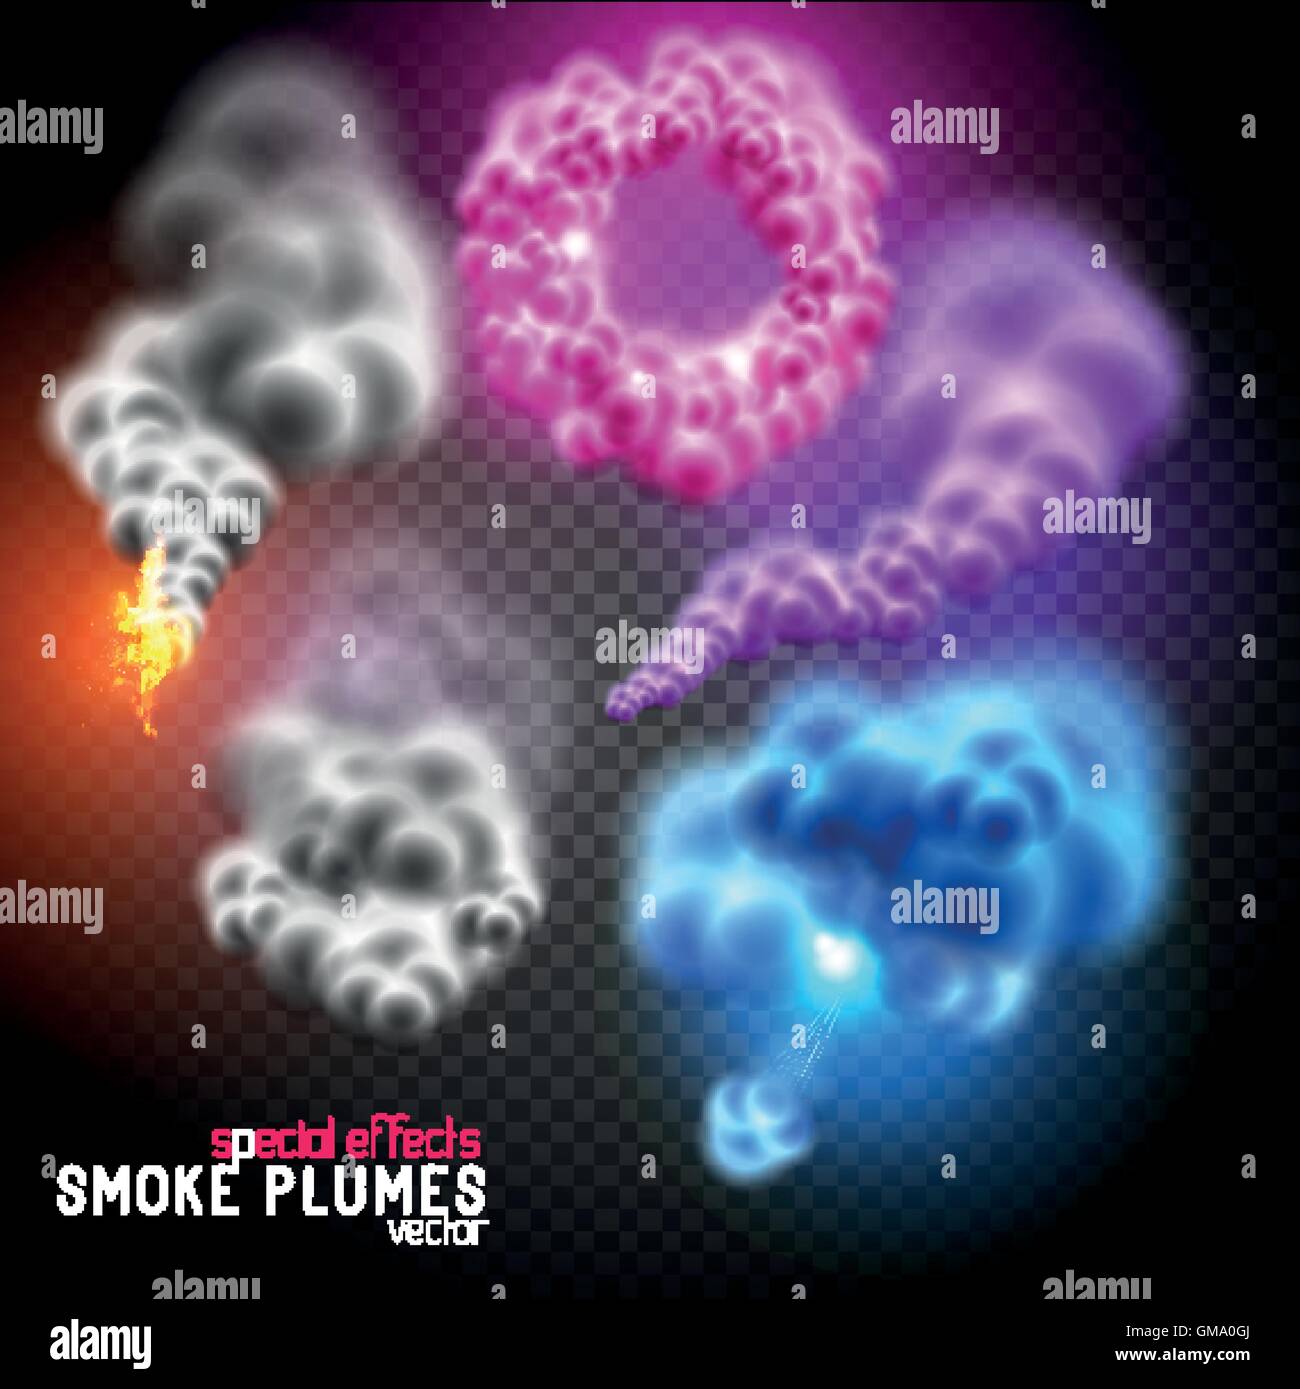 Fantastischen bunten Rauch-Ringe, flauschigen Wolken und Rauchschwaden. Vektor-Illustration. Stock Vektor